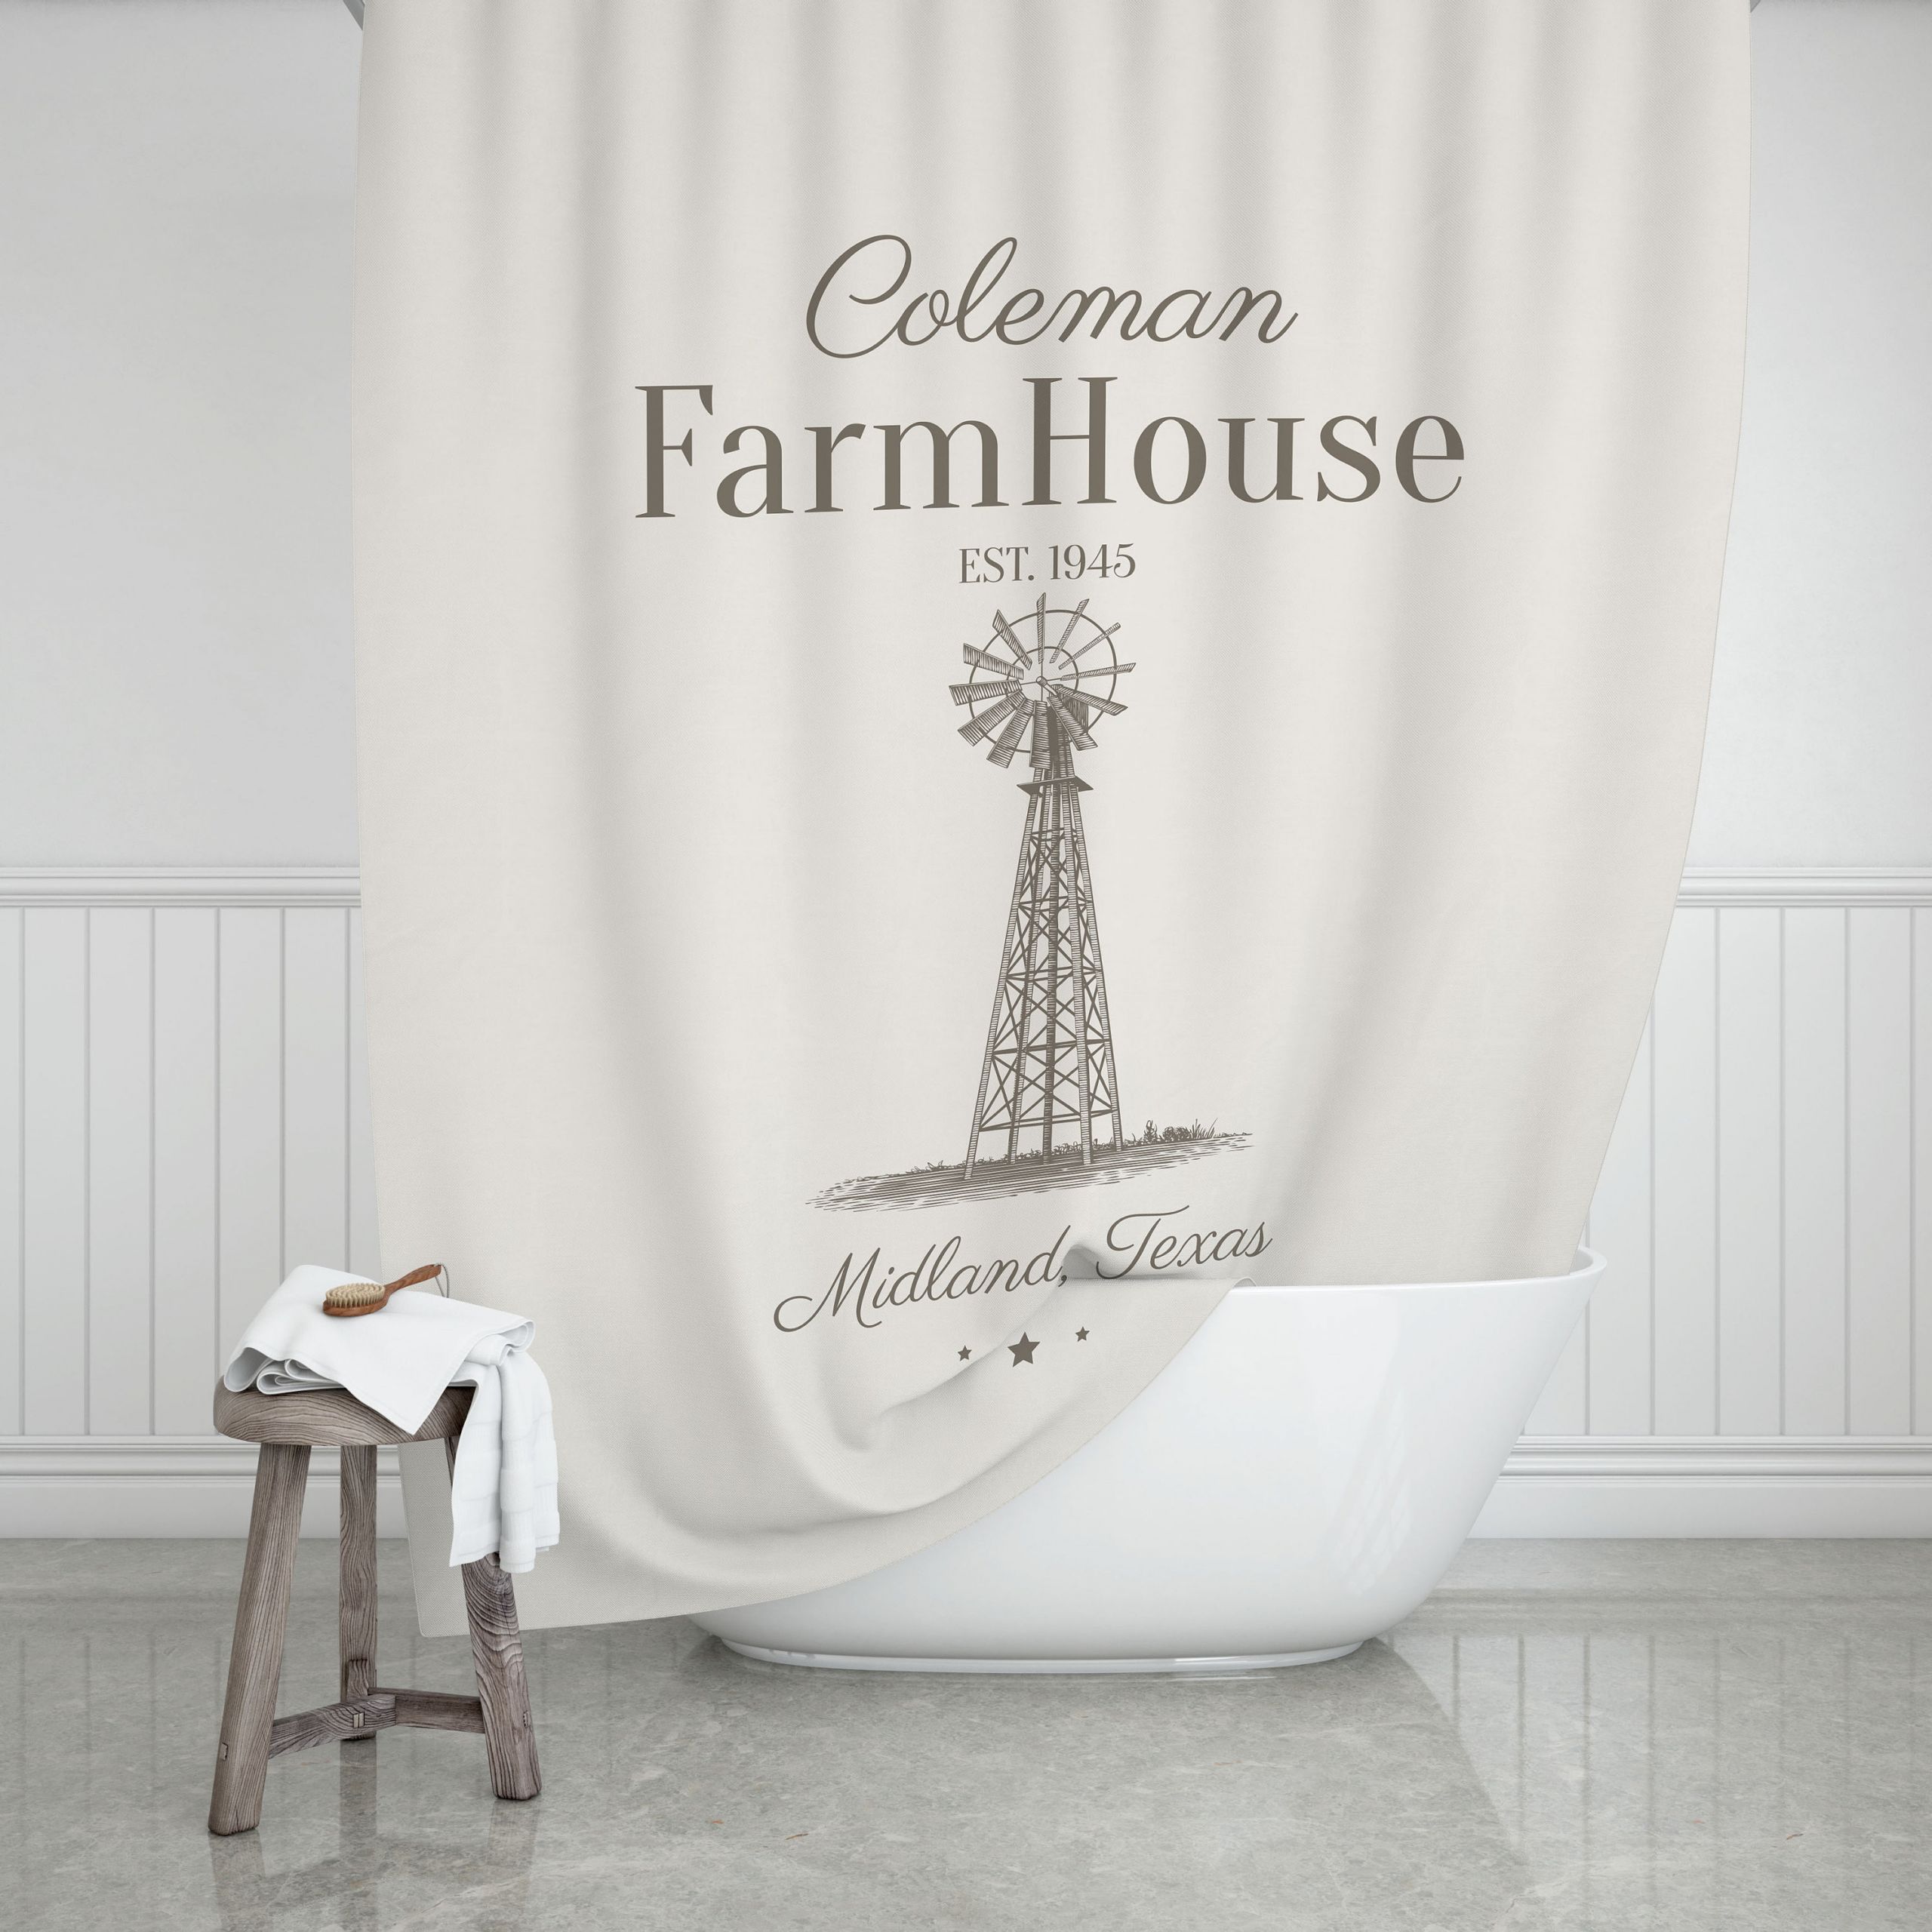 Farmhouse Bathroom Shower Curtain
 Vintage Windmill Farmhouse Shower Curtain Farmhouse